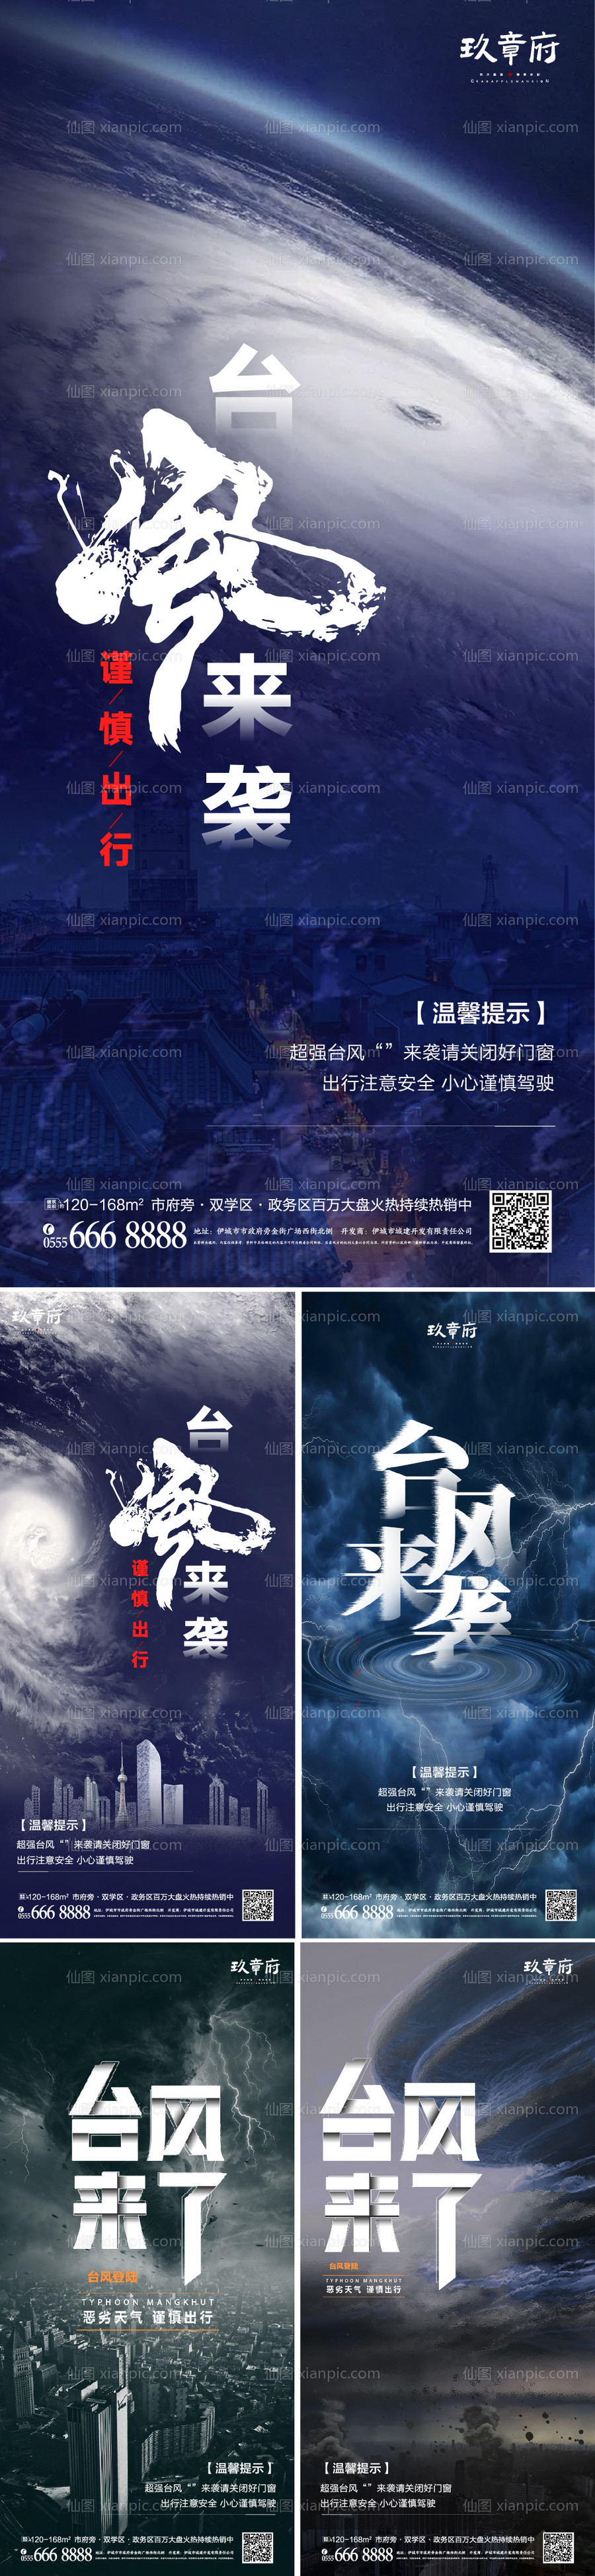 素材乐-台风预警系列海报